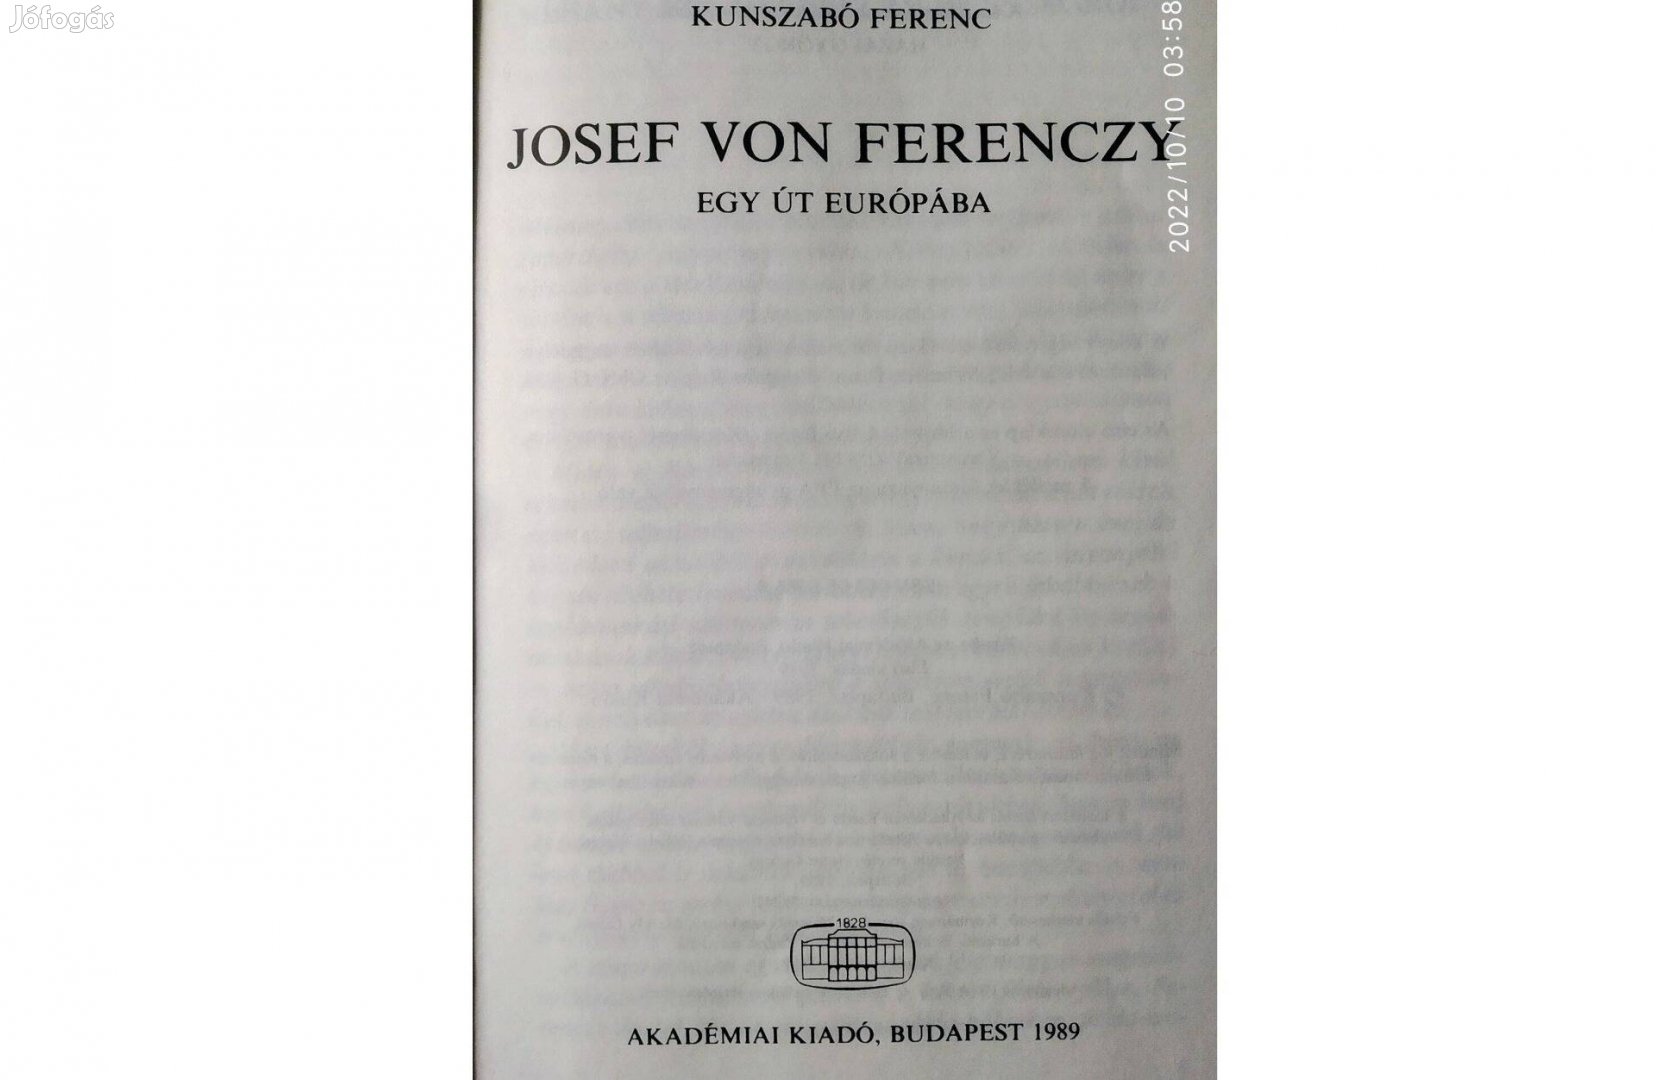 Josef von Ferenczy Kunszabó Ferenc